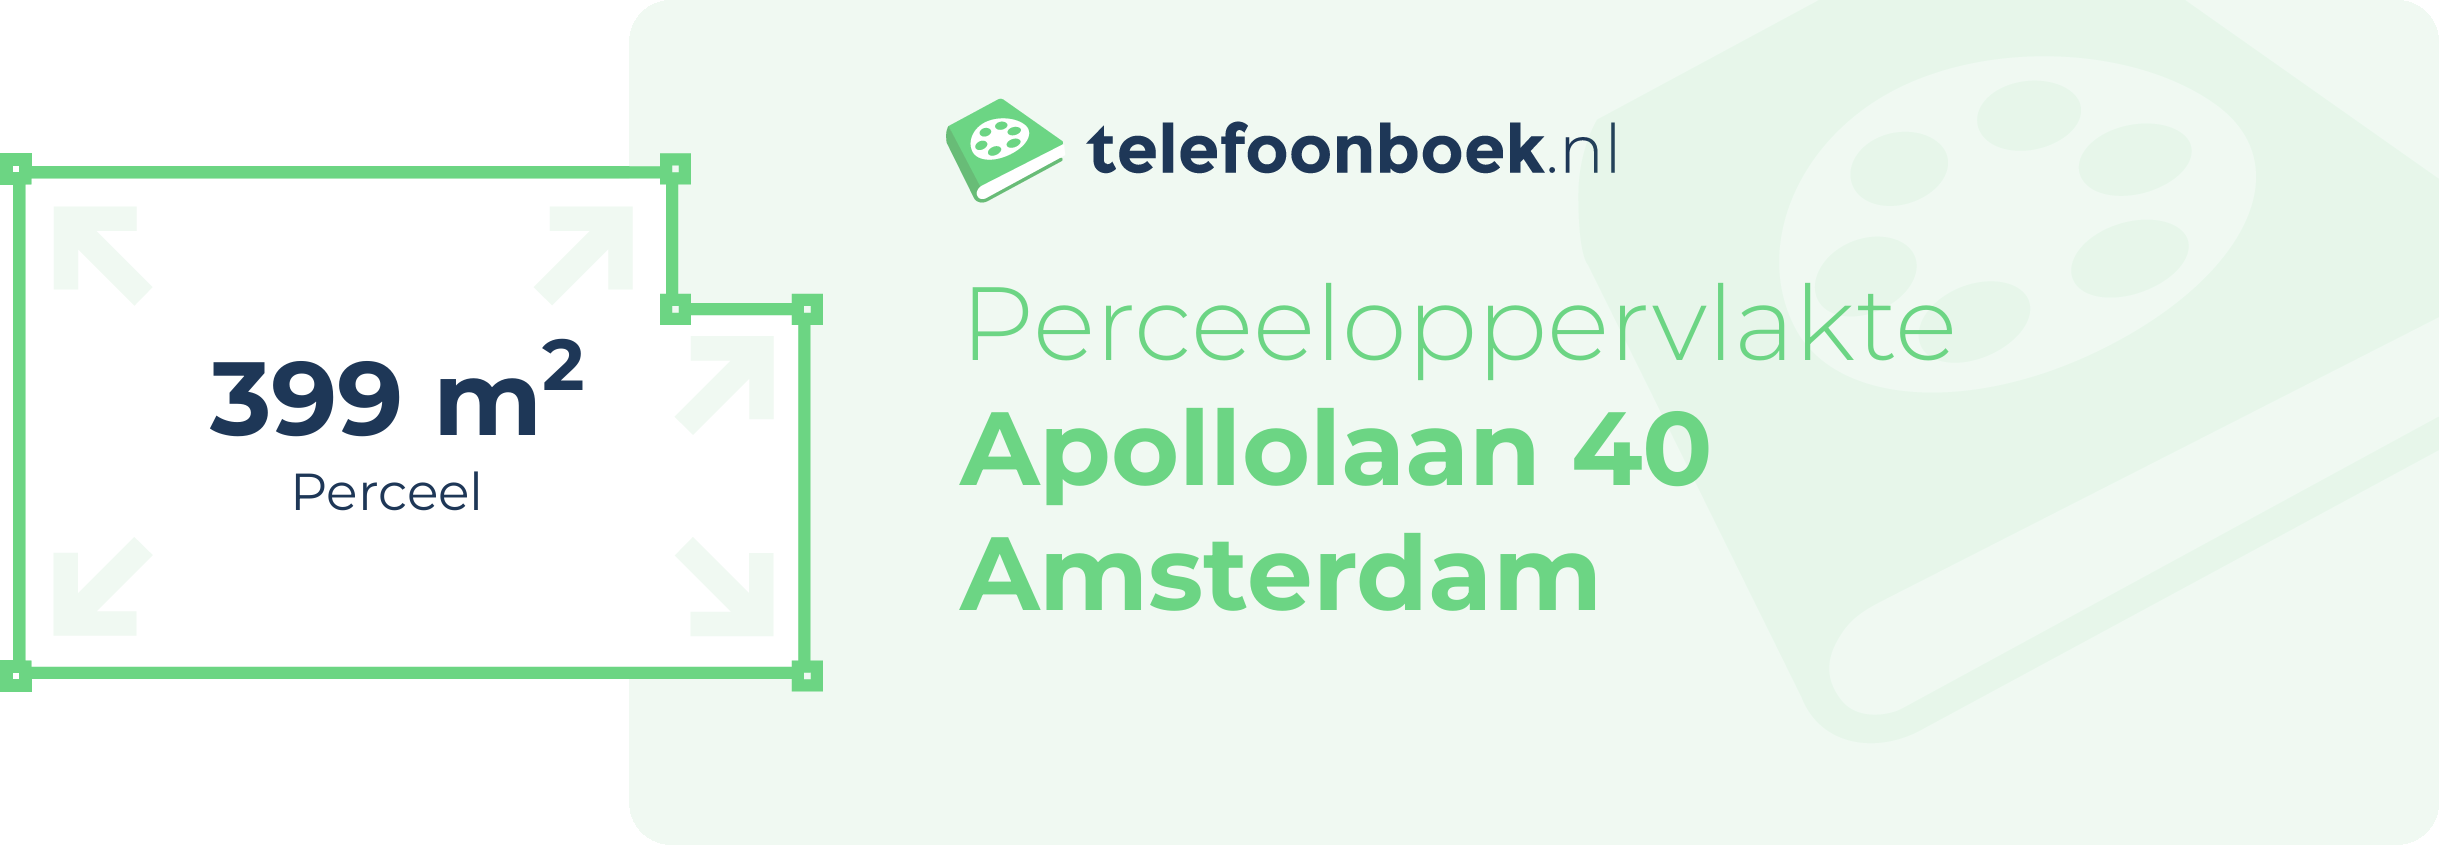 Perceeloppervlakte Apollolaan 40 Amsterdam